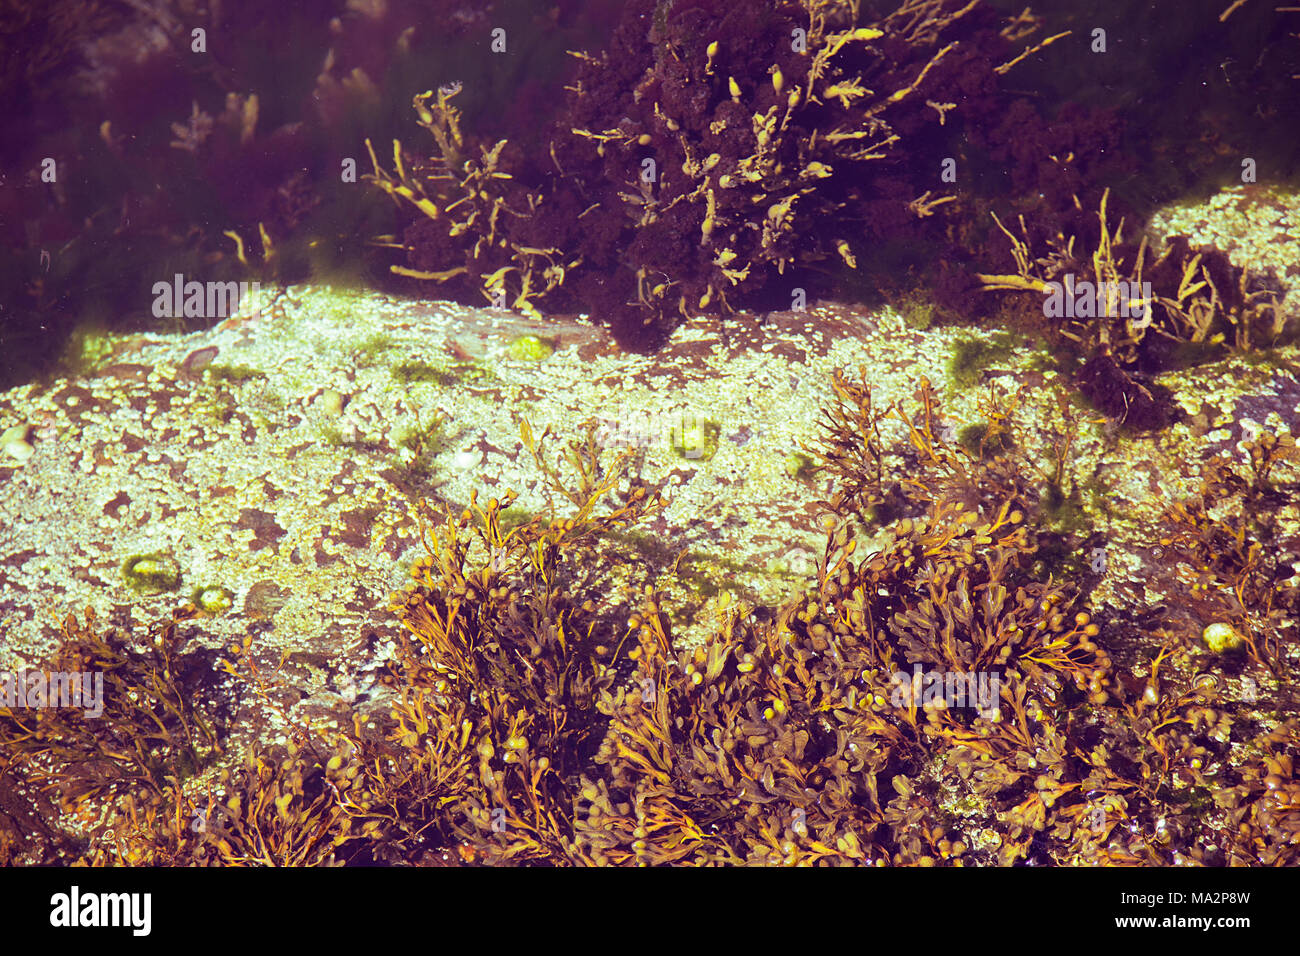 Les algues dans l'eau peu profonde vu de dessus la surface Banque D'Images